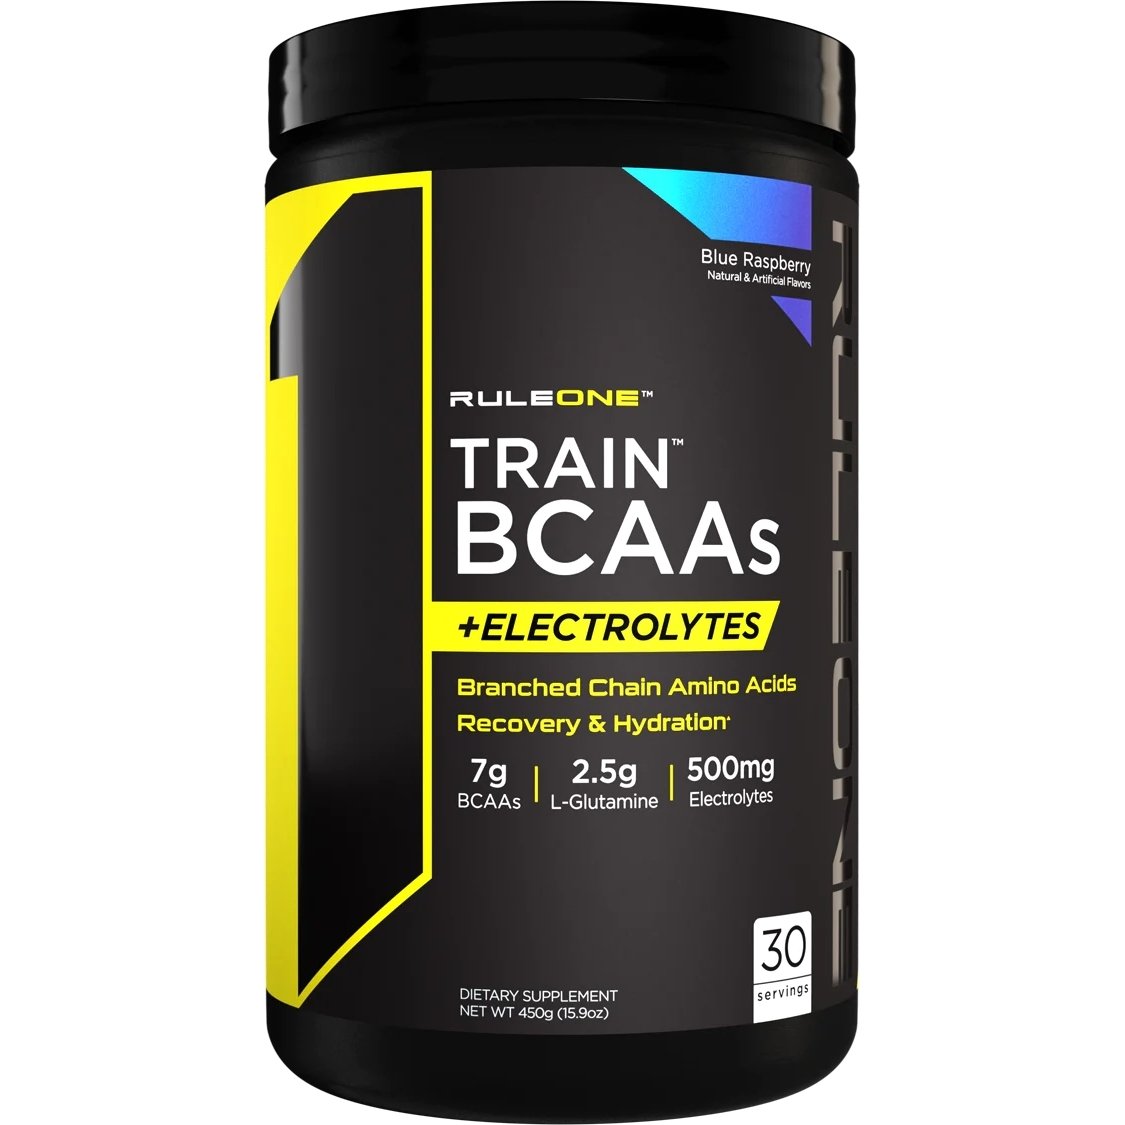 Аминокислота BCAA Rule 1 Train BCAAs + Electrolytes, 450 грамм Ежевика,  ml, Rule One Proteins. BCAA. Weight Loss recuperación Anti-catabolic properties Lean muscle mass 